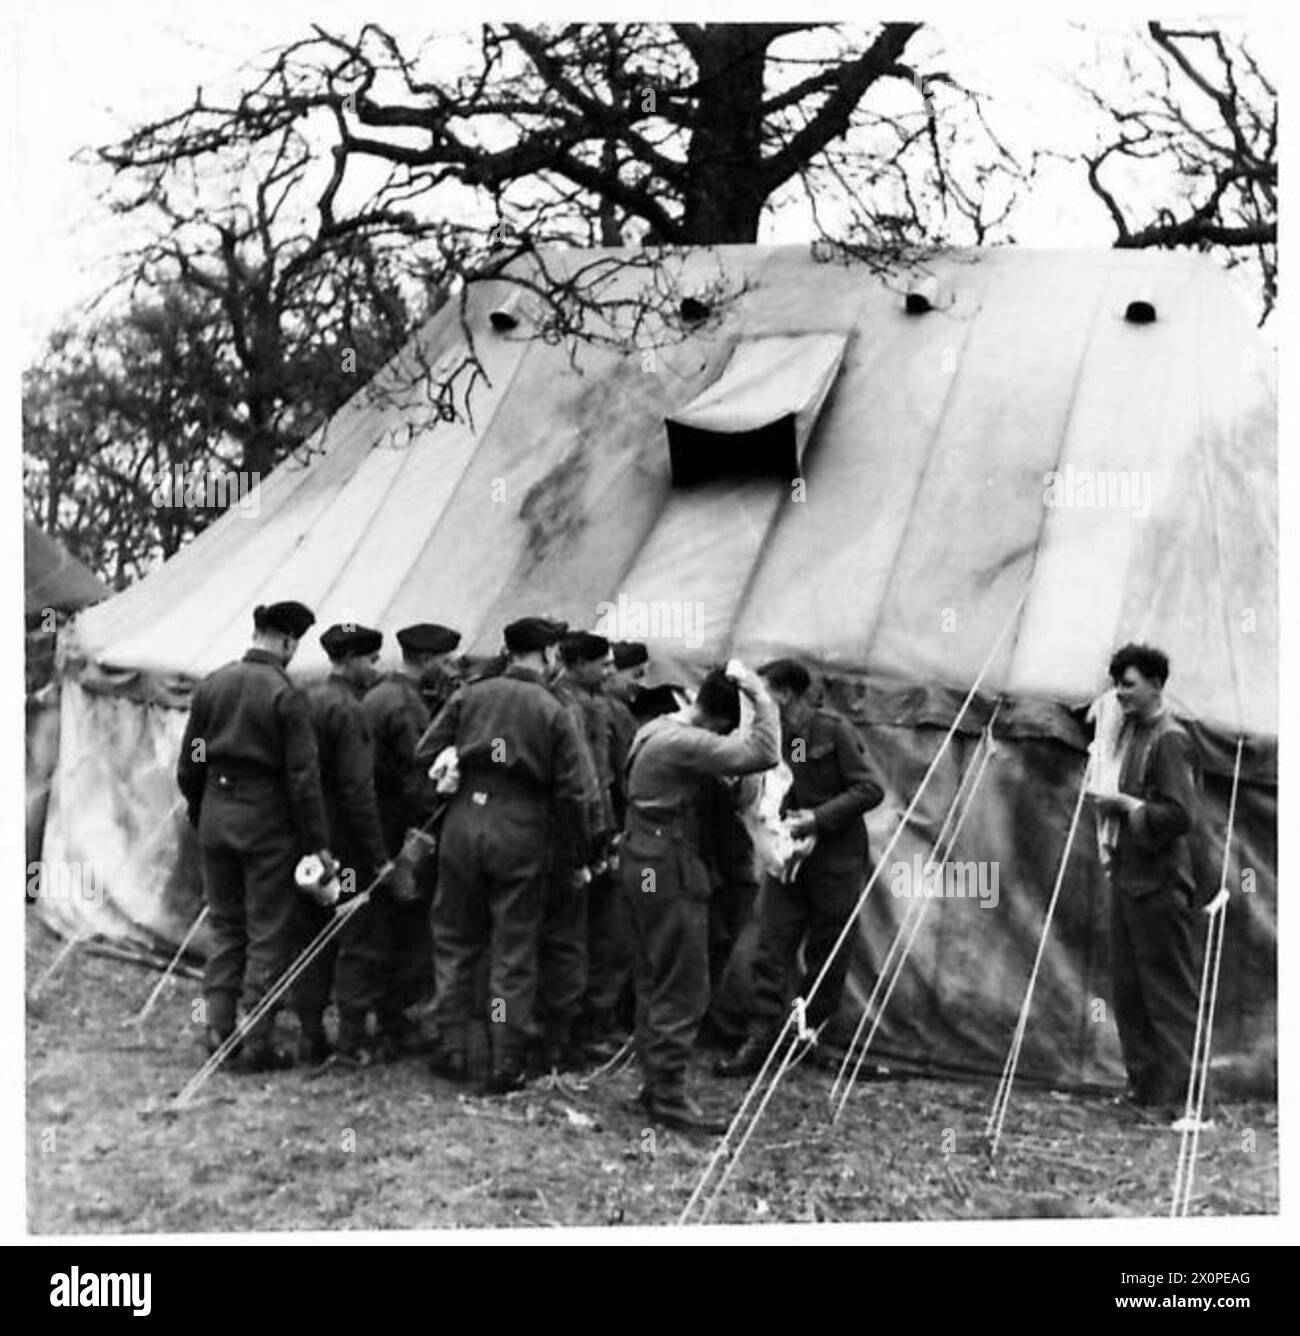 UNITÉS MOBILES DE BAIN - hommes attendant leur tour dans un bain de douche de l'unité mobile de bains, 4e section d'hygiène de terrain et 28e unité mobile de bains, Enbourne, Royal Fusiliers. Négatif photographique, Armée britannique Banque D'Images